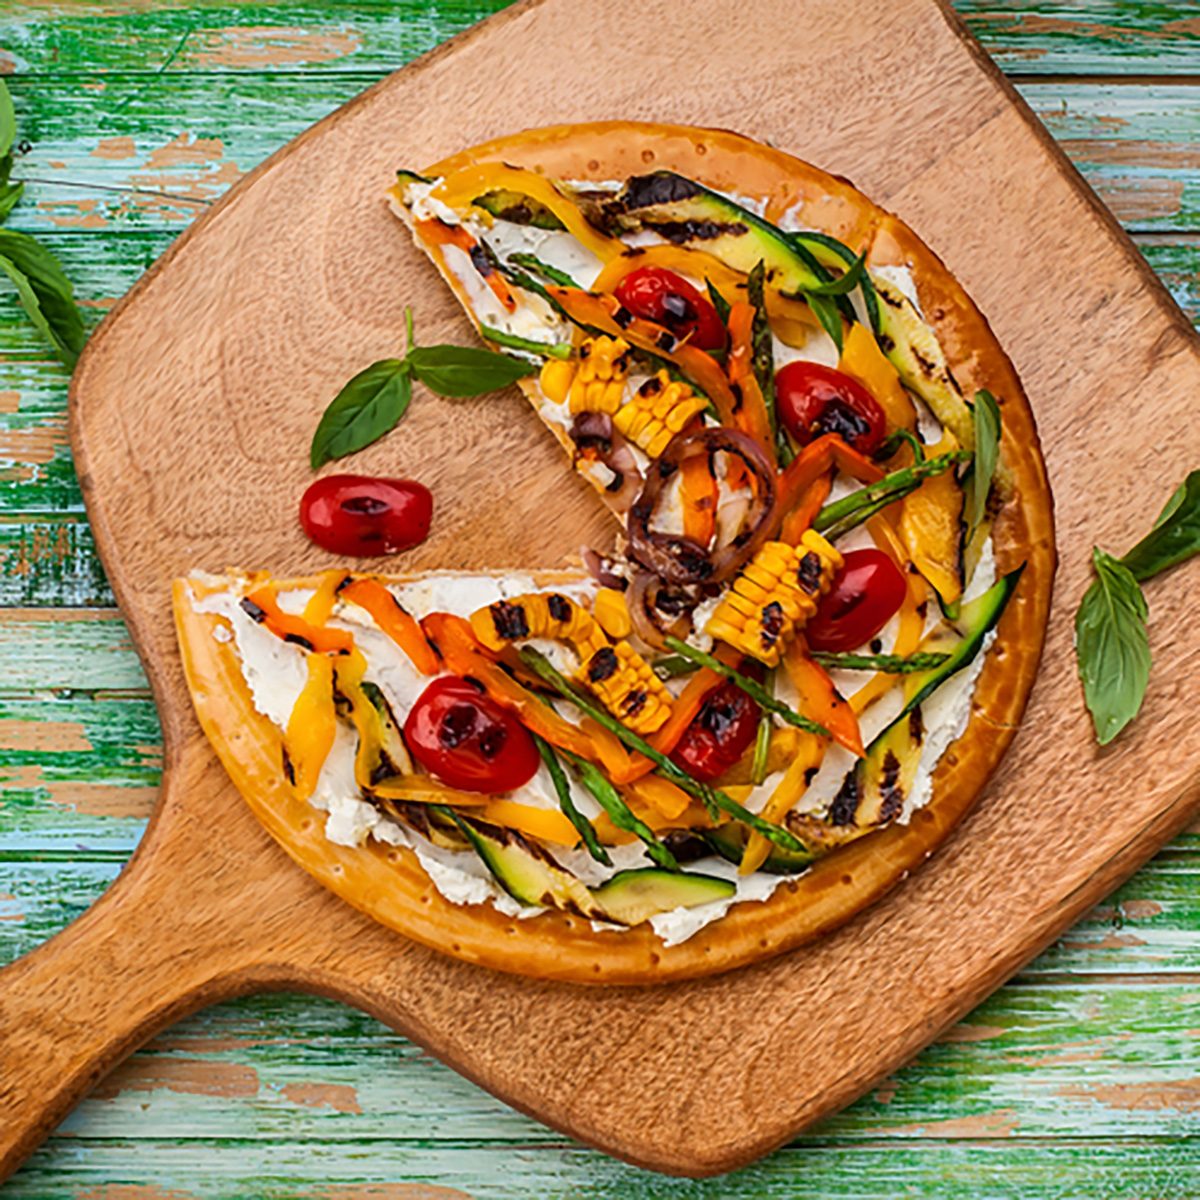 美味的夏日开胃菜:素食披萨配烤蔬菜和软奶酪放在木板上。俯视图